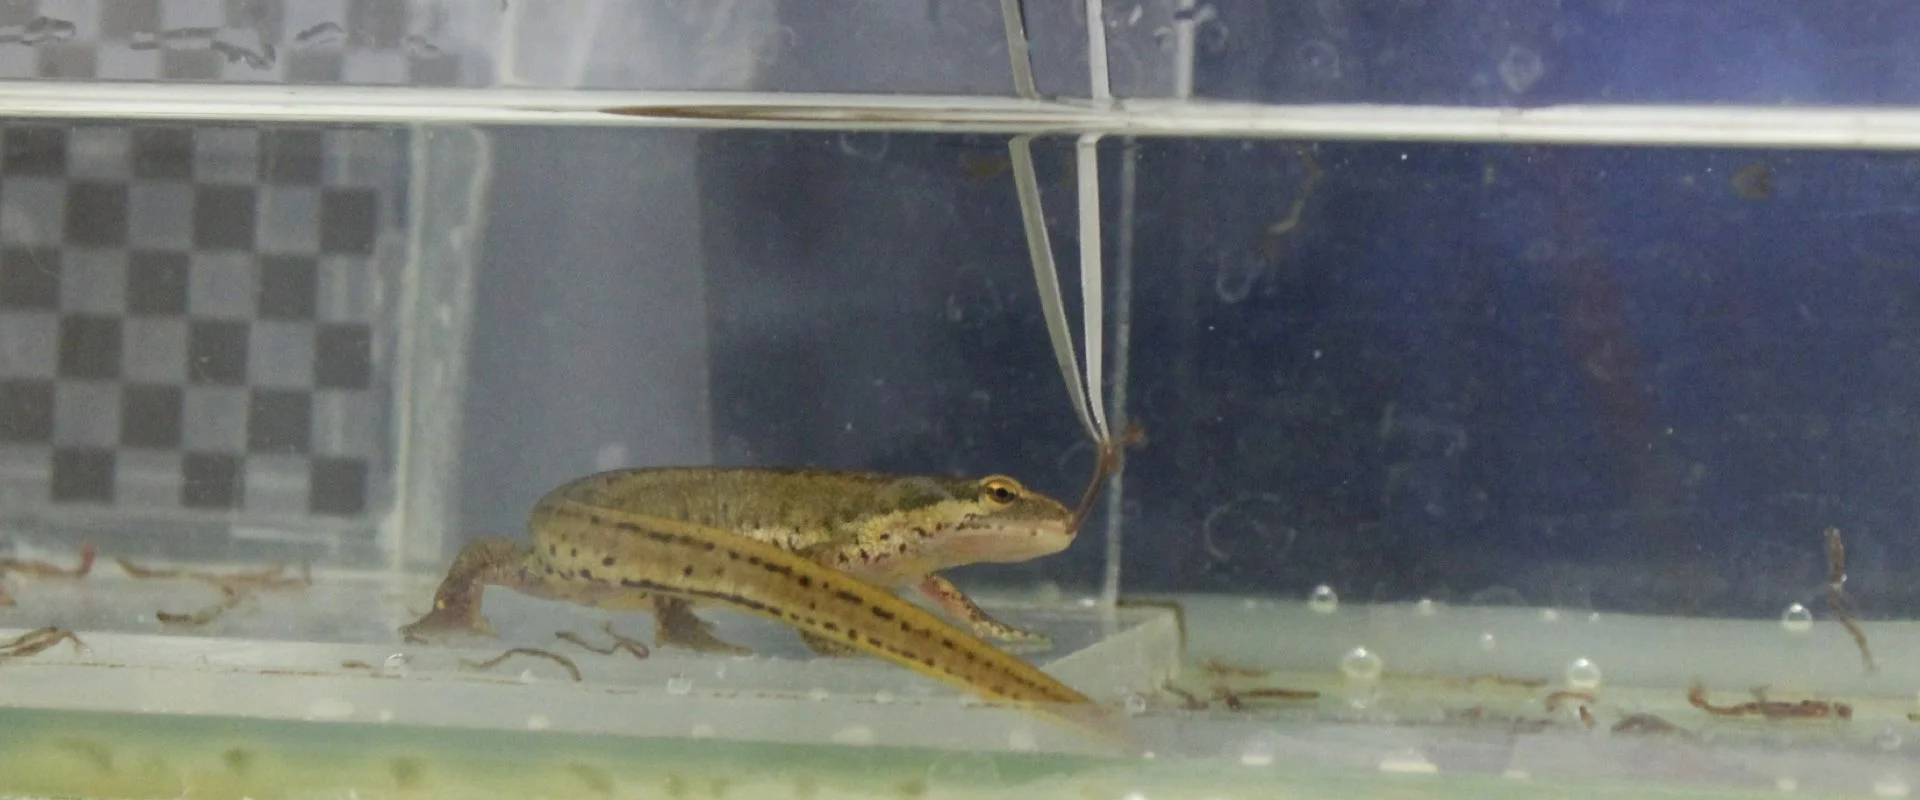 Eine Hand mit einer Pinzette hält Futter vor einem lebenden Salamander unter Wasser